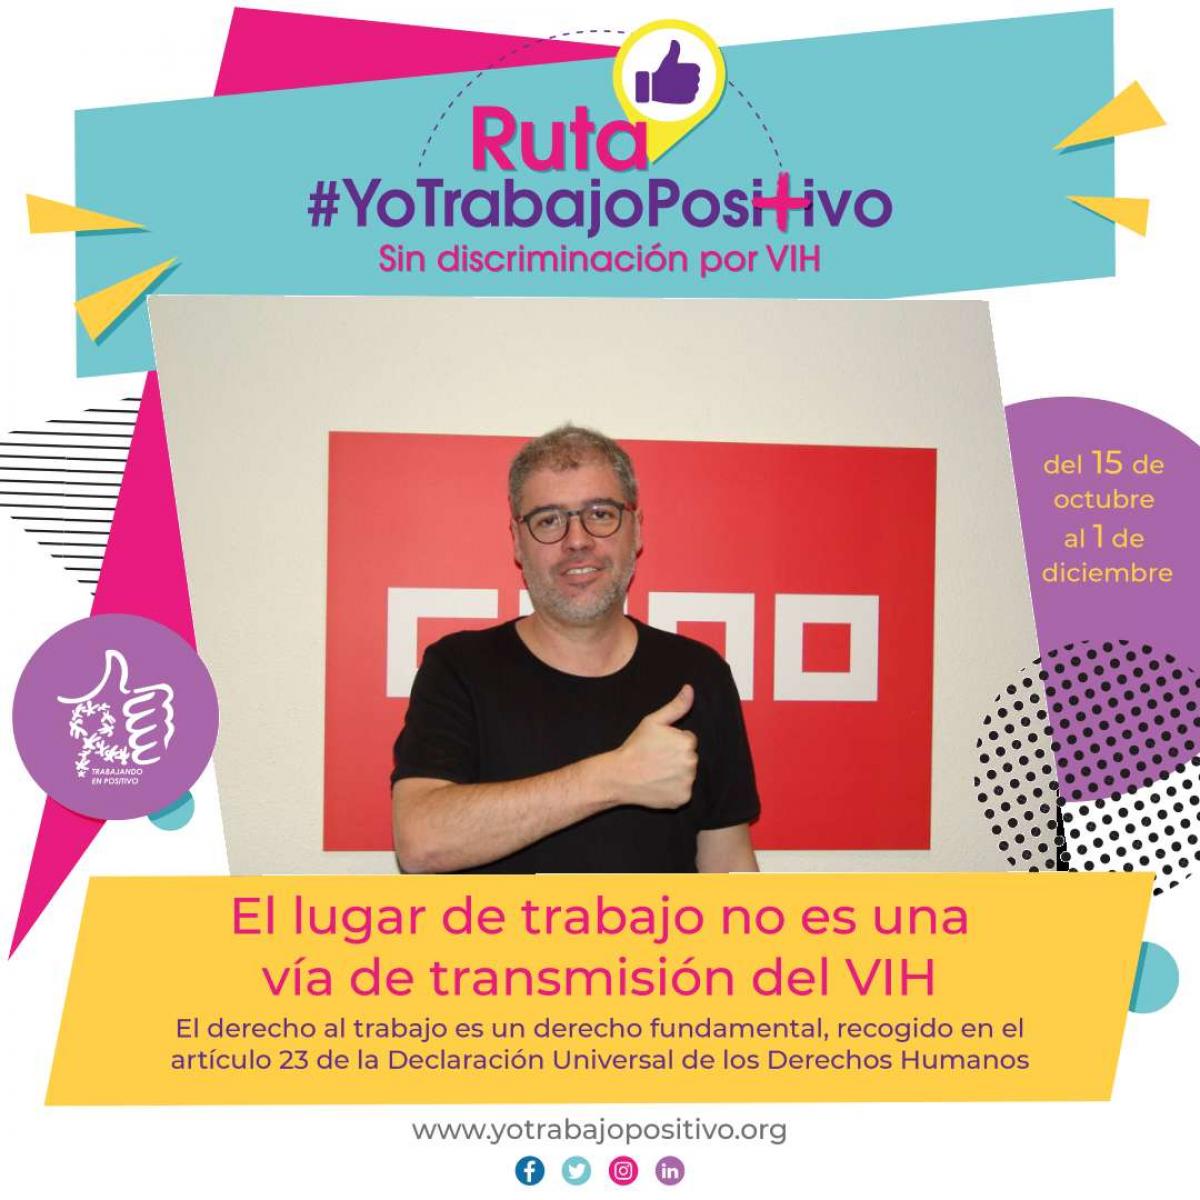 El secretario general, Unai Sordo, participa en la Ruta #YoTrabajoPositivo